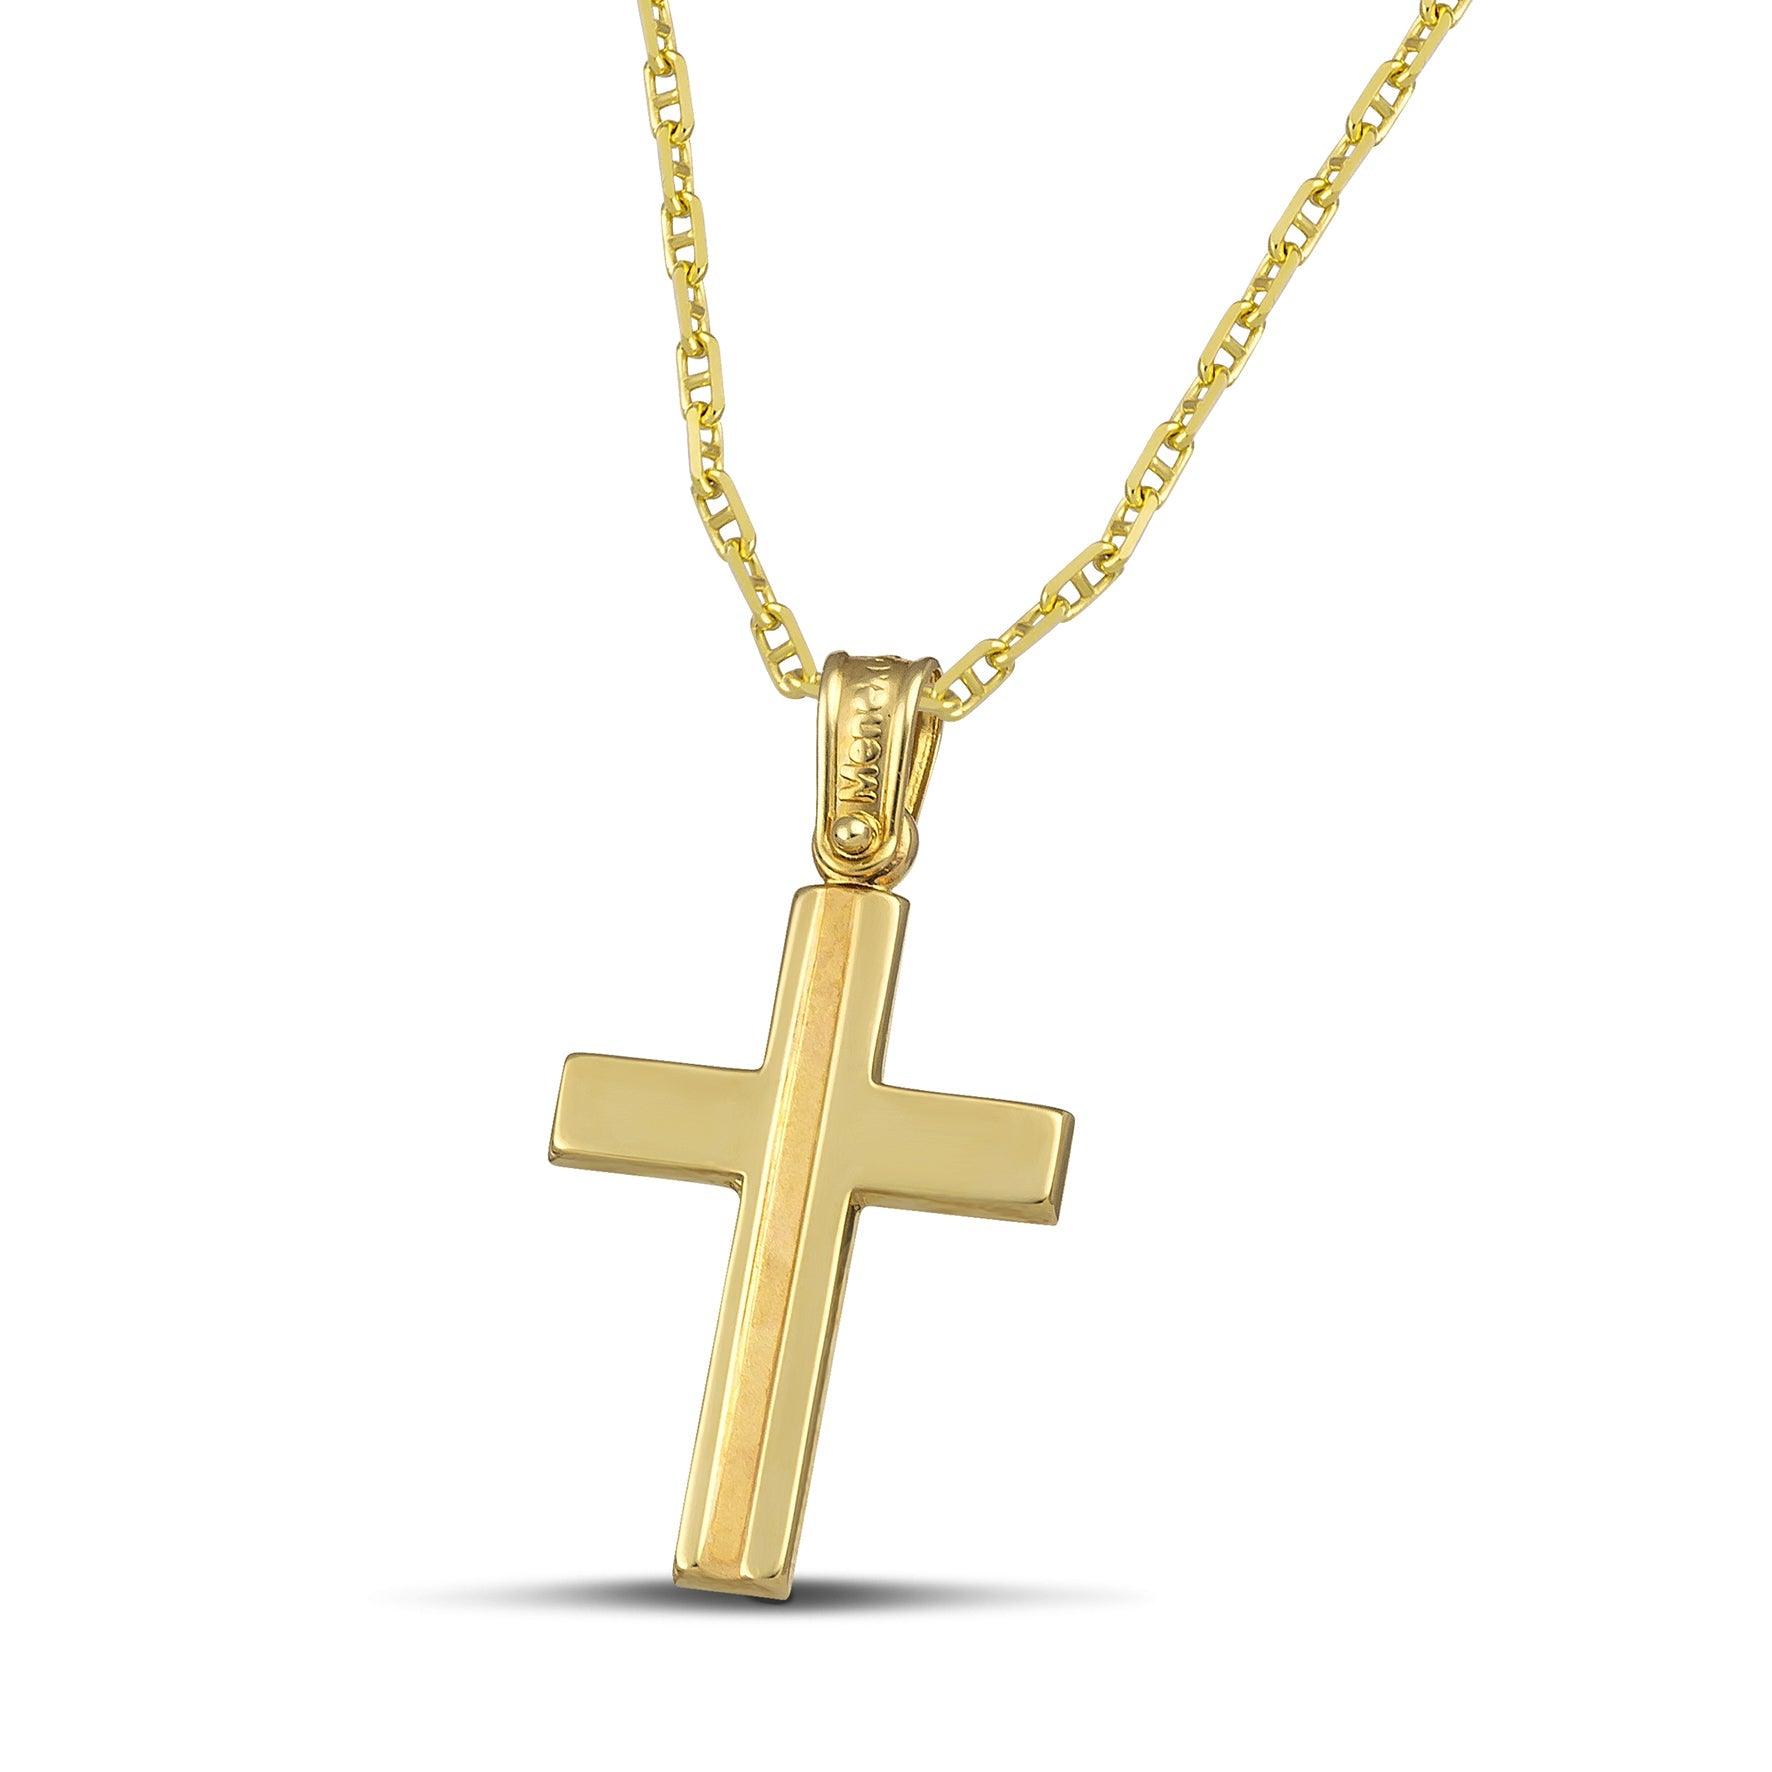 Γυναικείος σταυρός βάπτισης από χρυσό Κ14 κλασσικός με ματ, με «Θ» αλυσίδα.